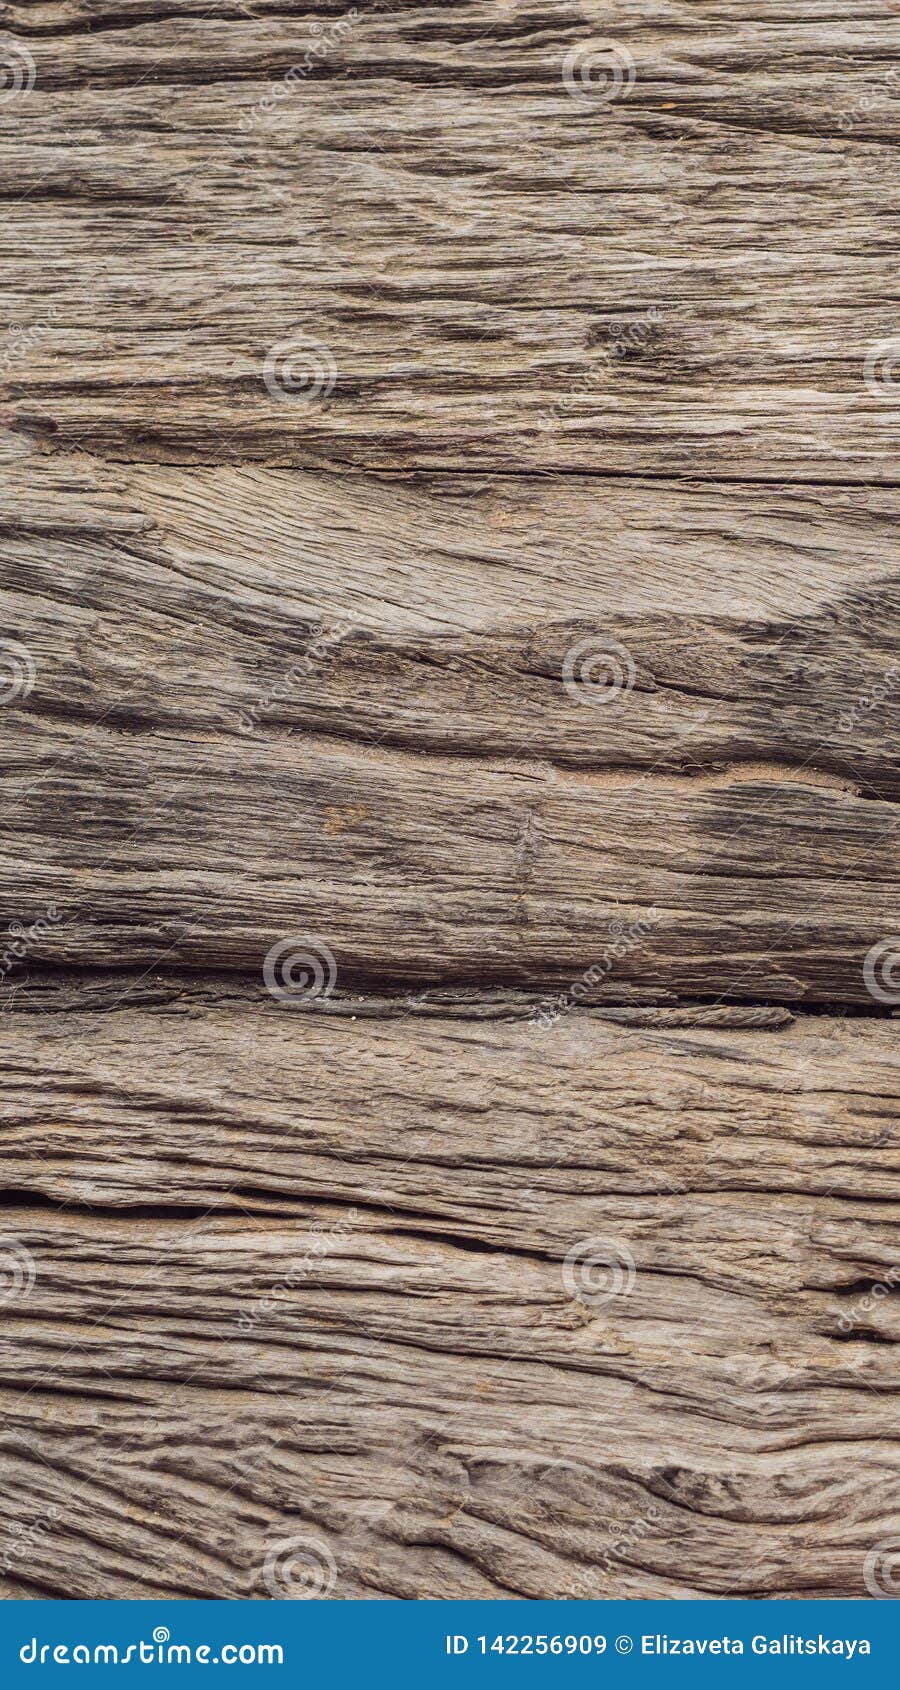 Textures gỗ: Khám phá độ bắt mắt và sự ấn tượng của các loại textures gỗ độc đáo trong hình ảnh này. Sự kết hợp tuyệt vời giữa vẻ đẹp và chất lượng của textures gỗ tạo ra một hiệu ứng tuyệt vời mà bạn không thể bỏ qua.